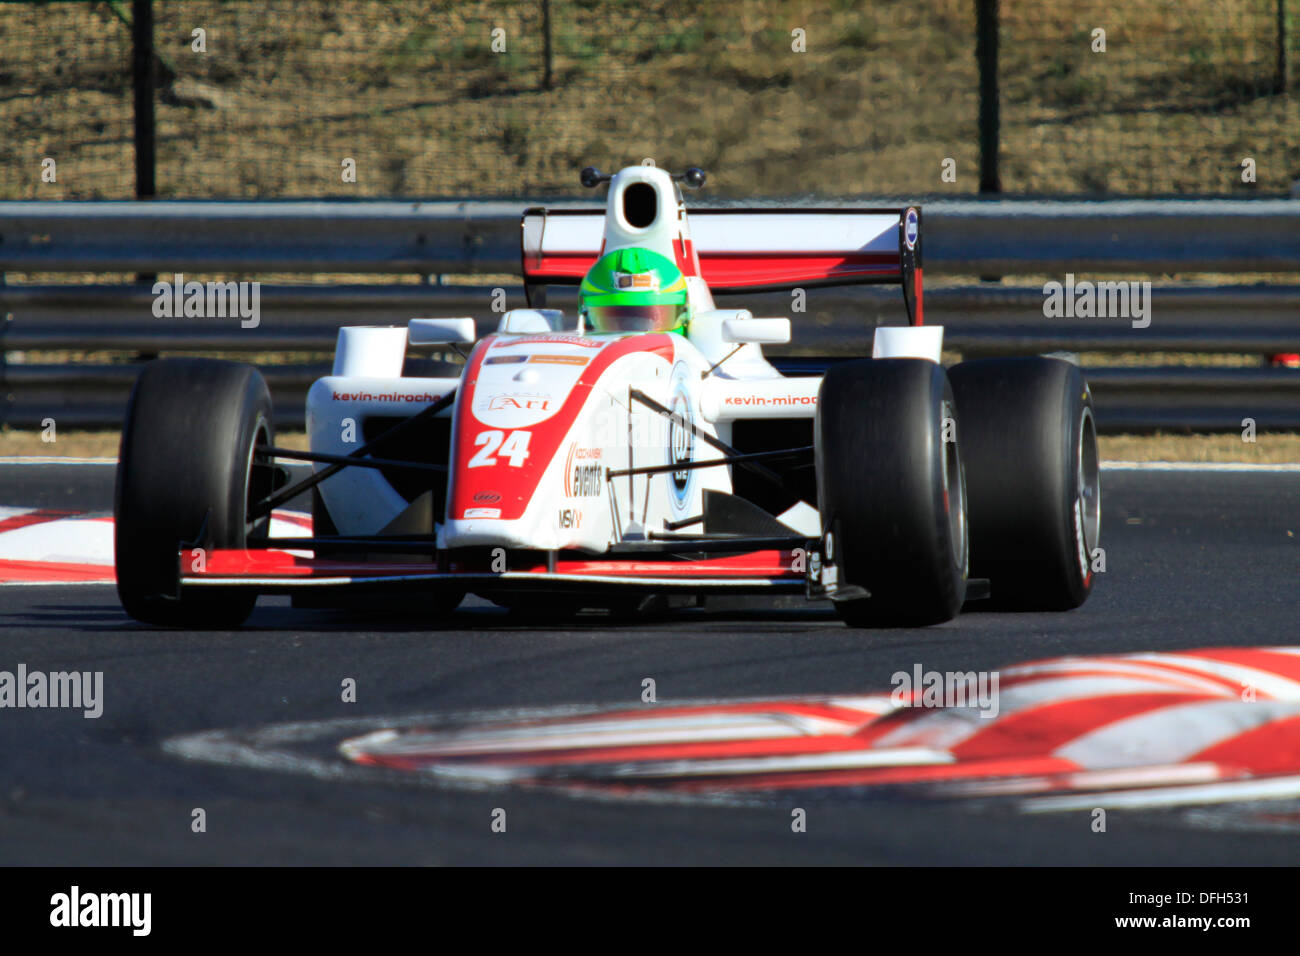 Formel-2-Fahrer Kevin Mirocha aus Polen am Hungaroring in Ungarn am 8. September 2012 Stockfoto